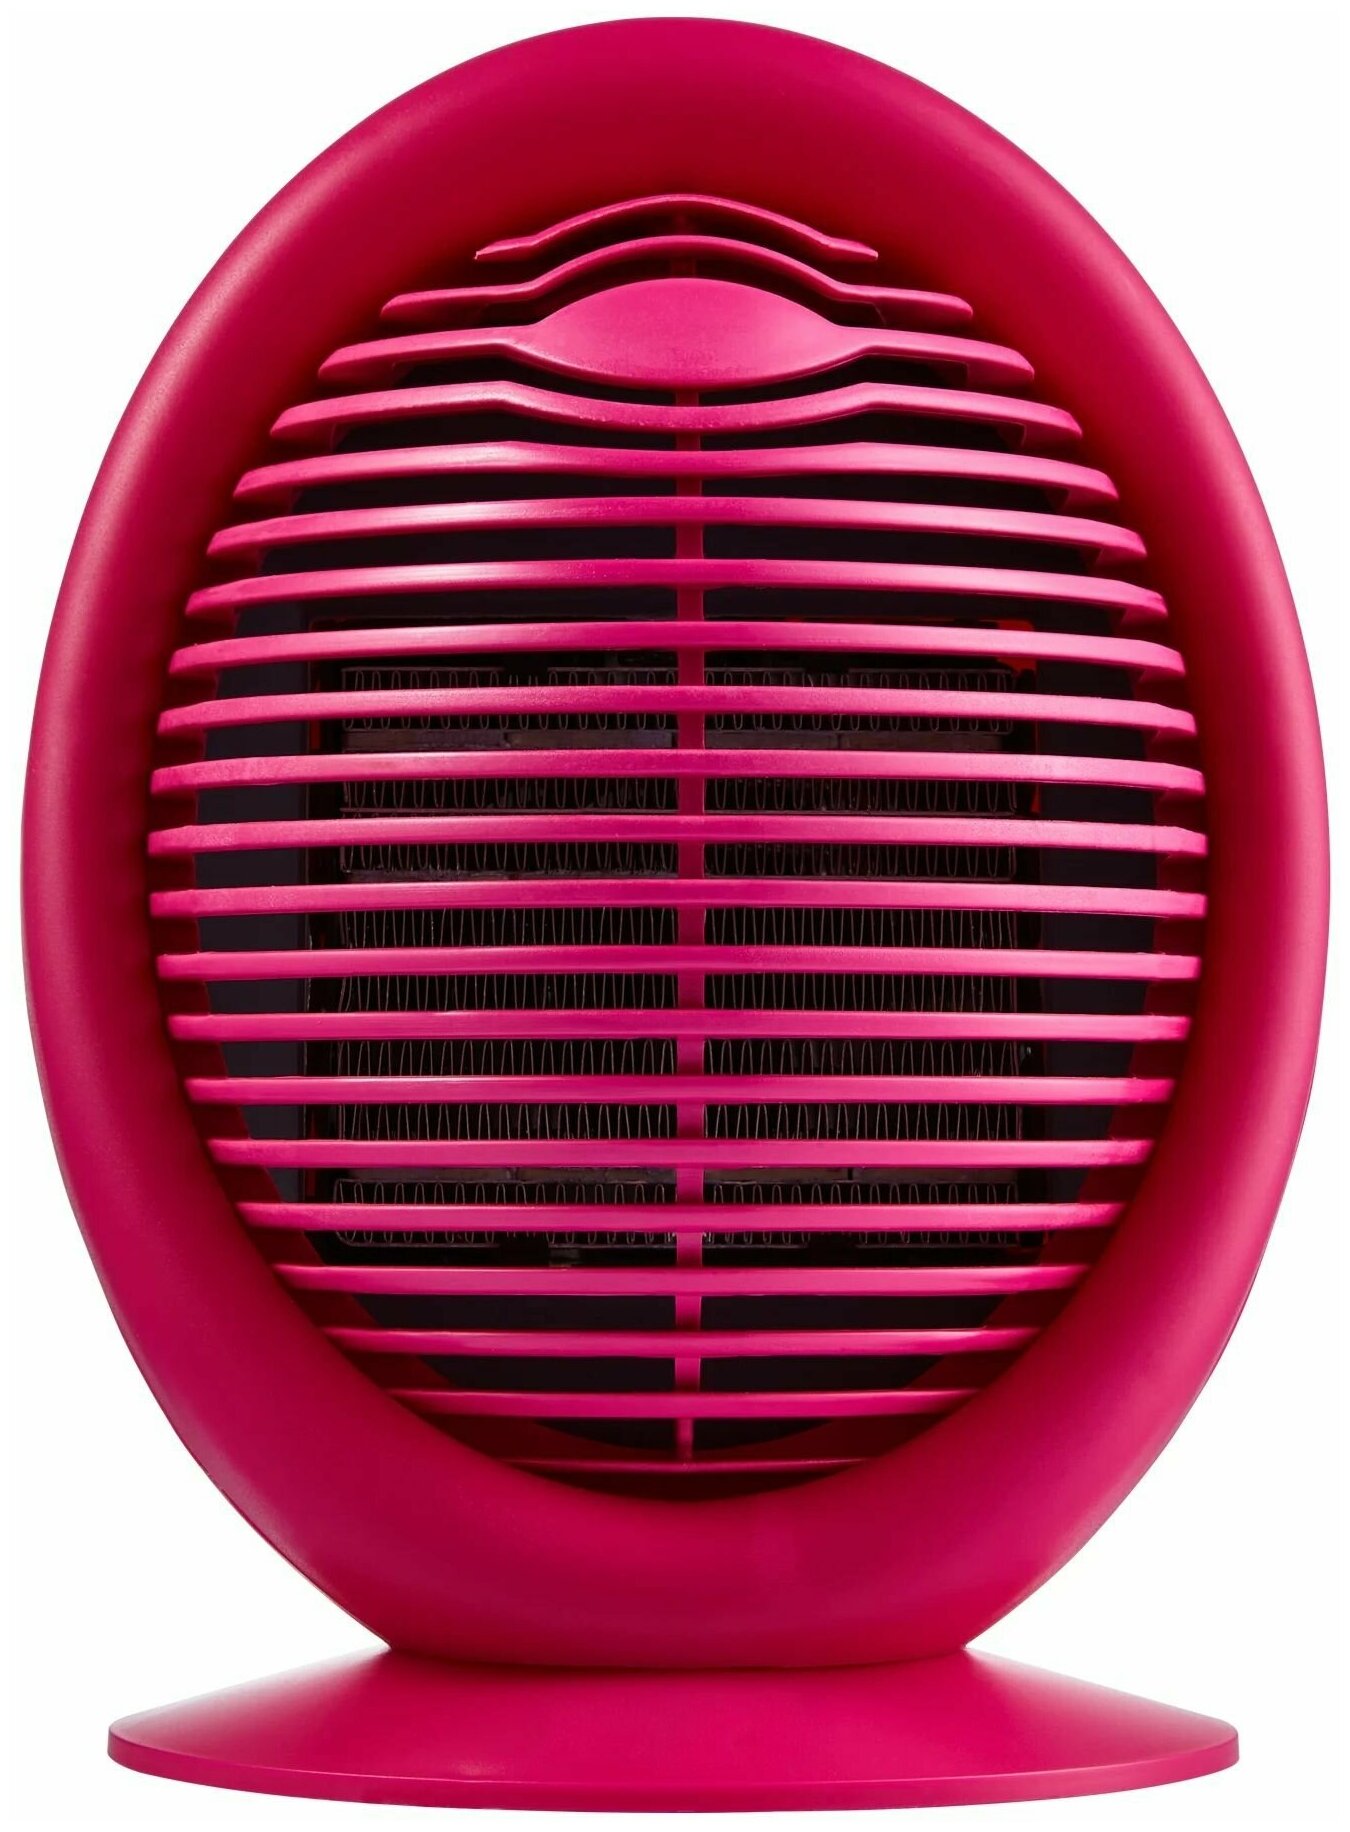 Тепловентилятор керамический электрический с механическим термостатом, 2000 Вт, цвет розовый, для дизайнерской гостиной или детской комнаты